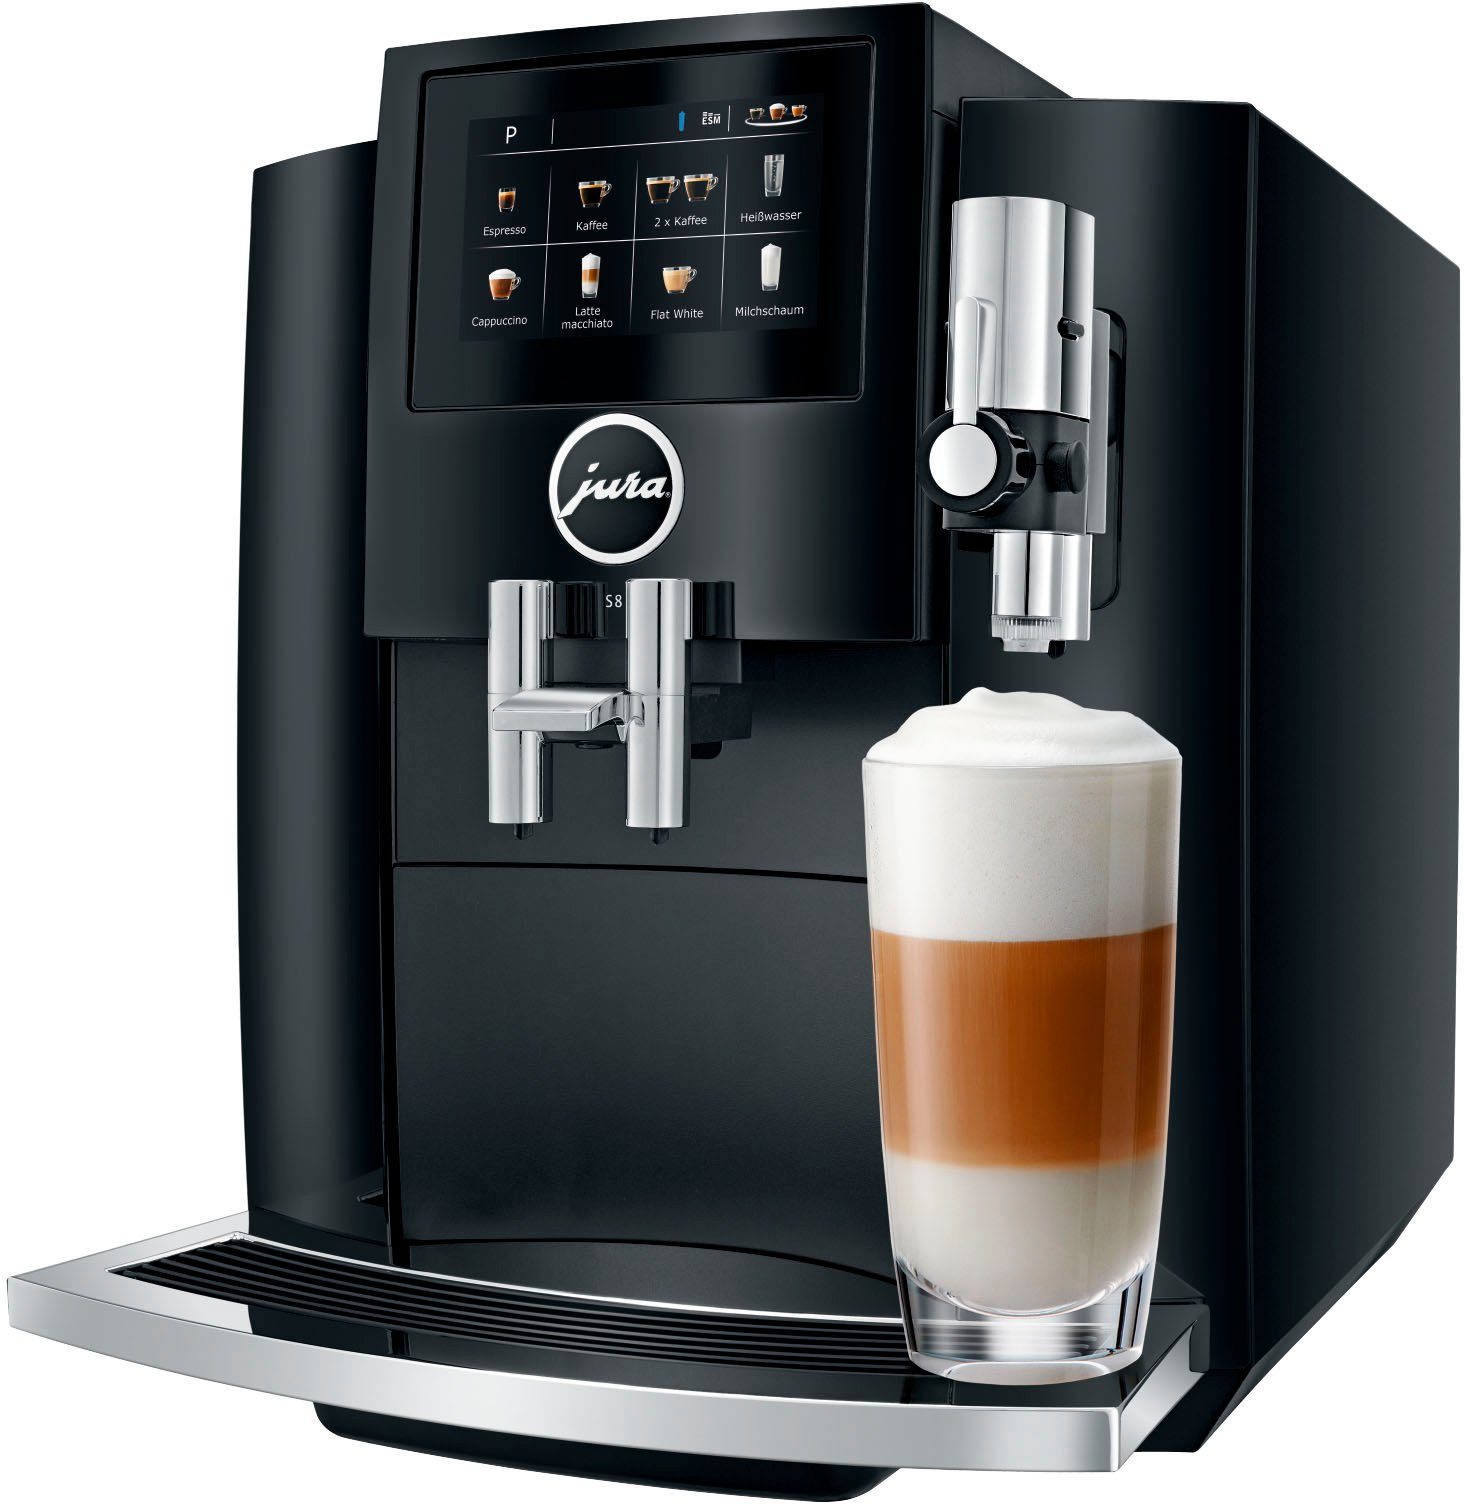 【Vertrauen】 JURA Kaffeevollautomat 15381 S8